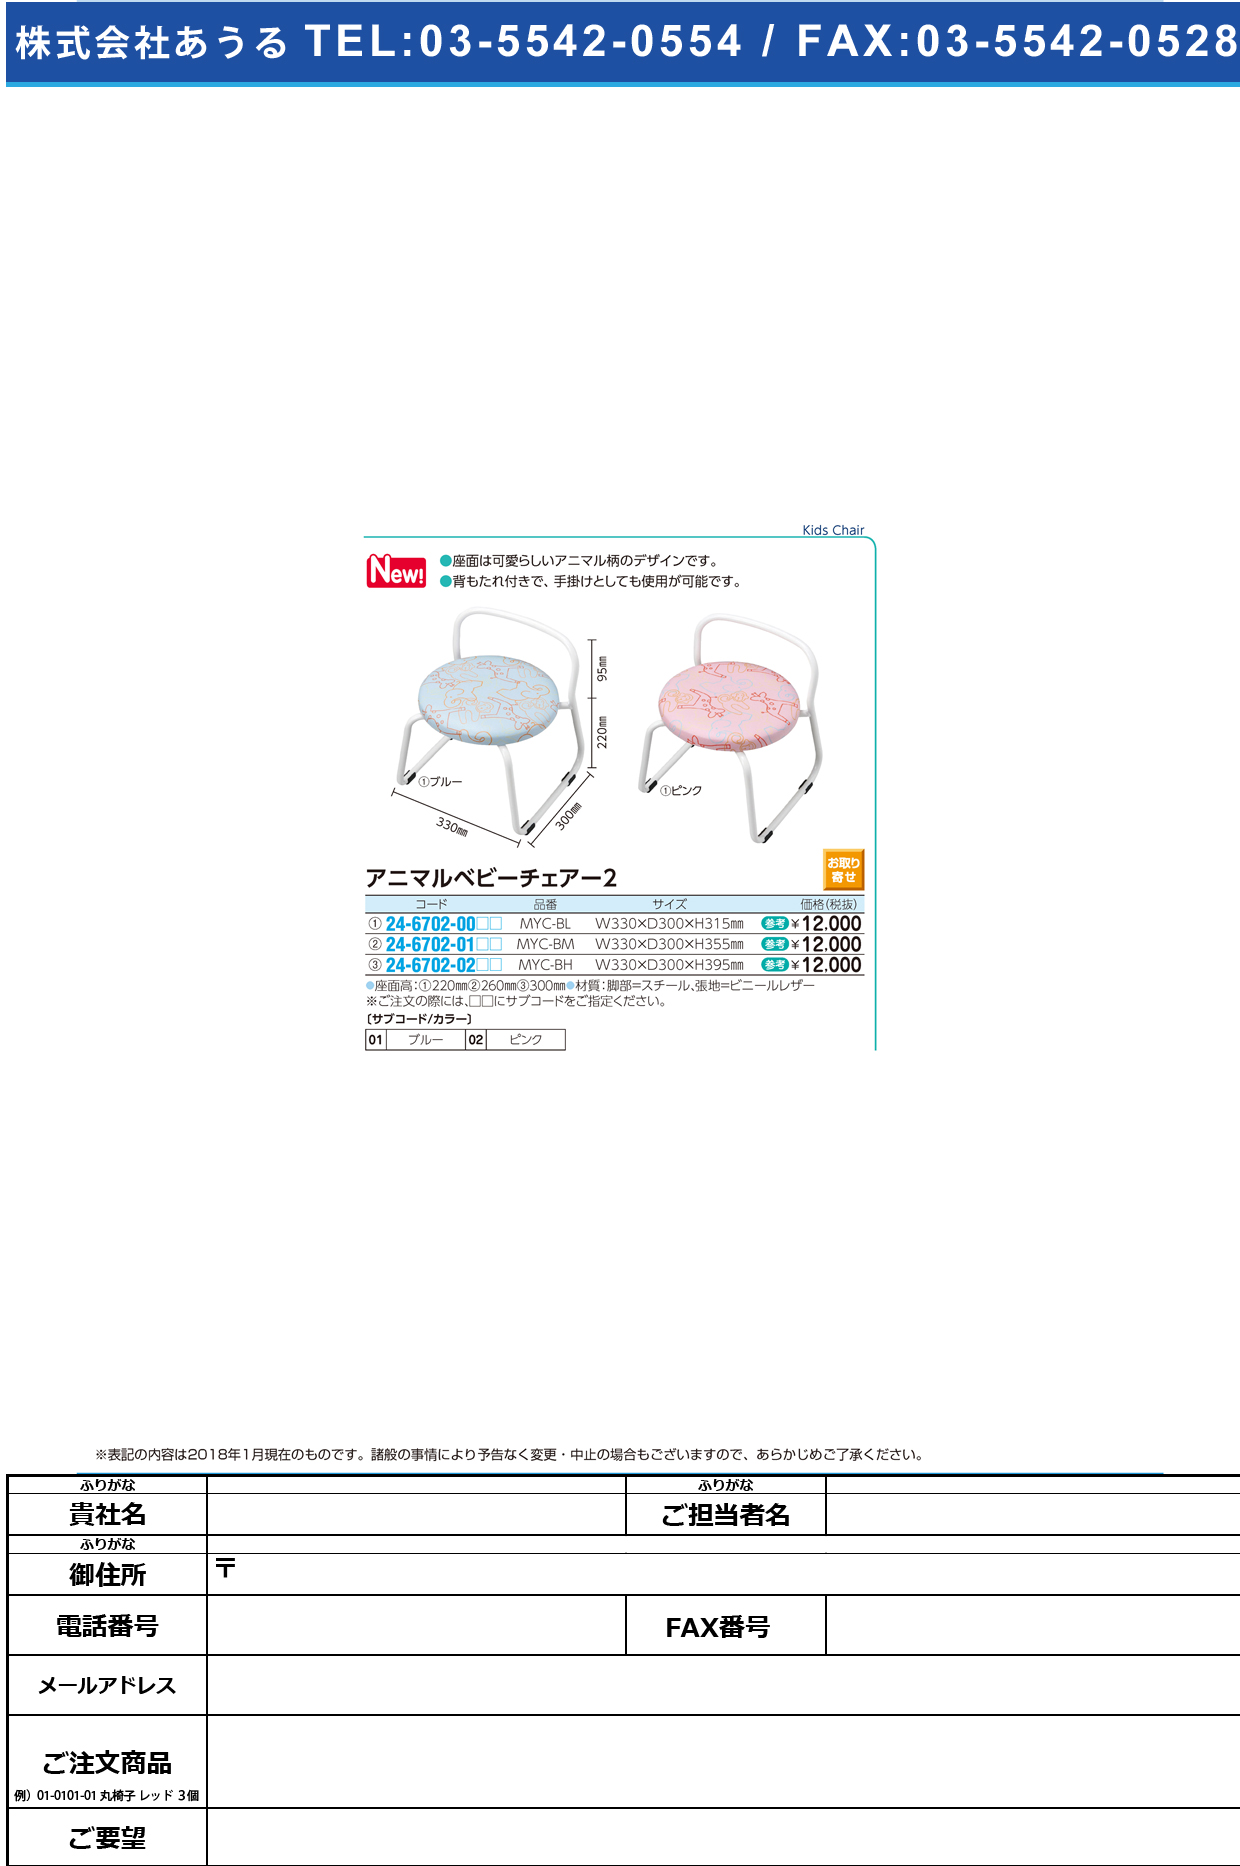 (24-6702-01)アニマルベビーチェア MYC-BM(33X30X35.5CM) ｱﾆﾏﾙﾍﾞﾋﾞｰﾁｪｱ2 ピンク【1台単位】【2018年カタログ商品】